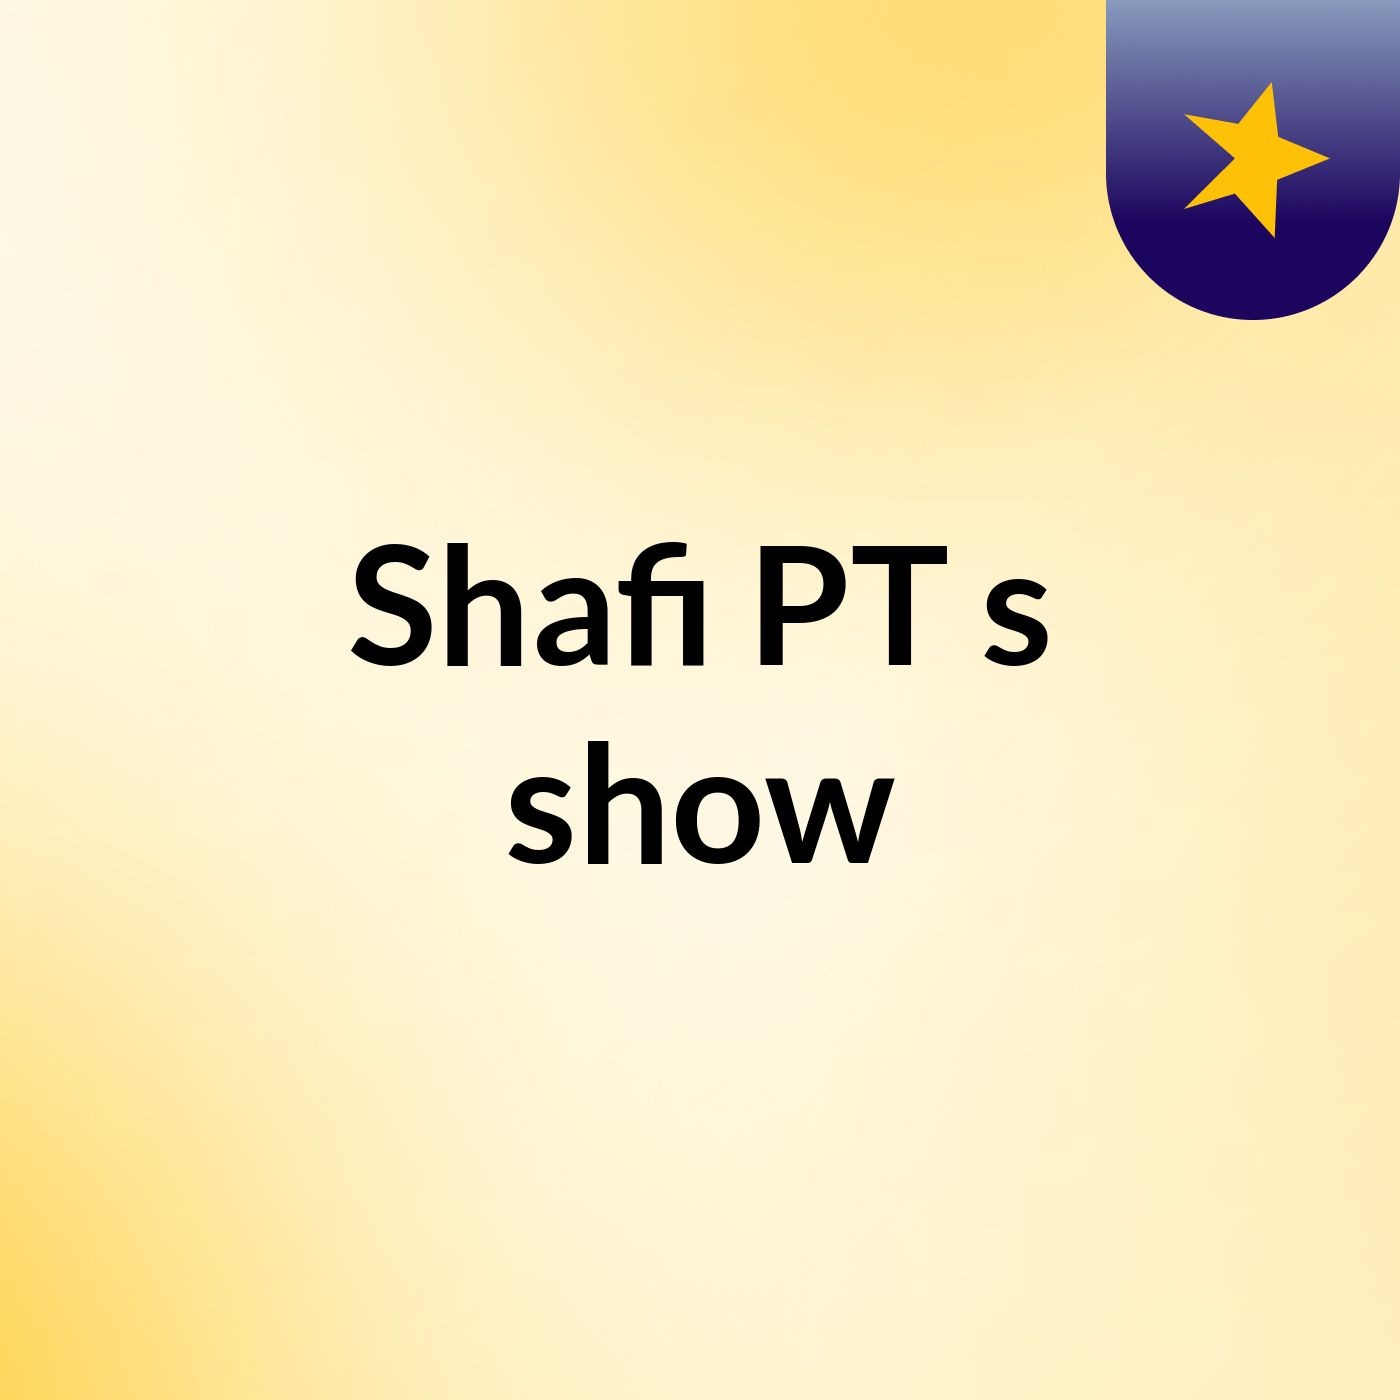 Shafi PT's show